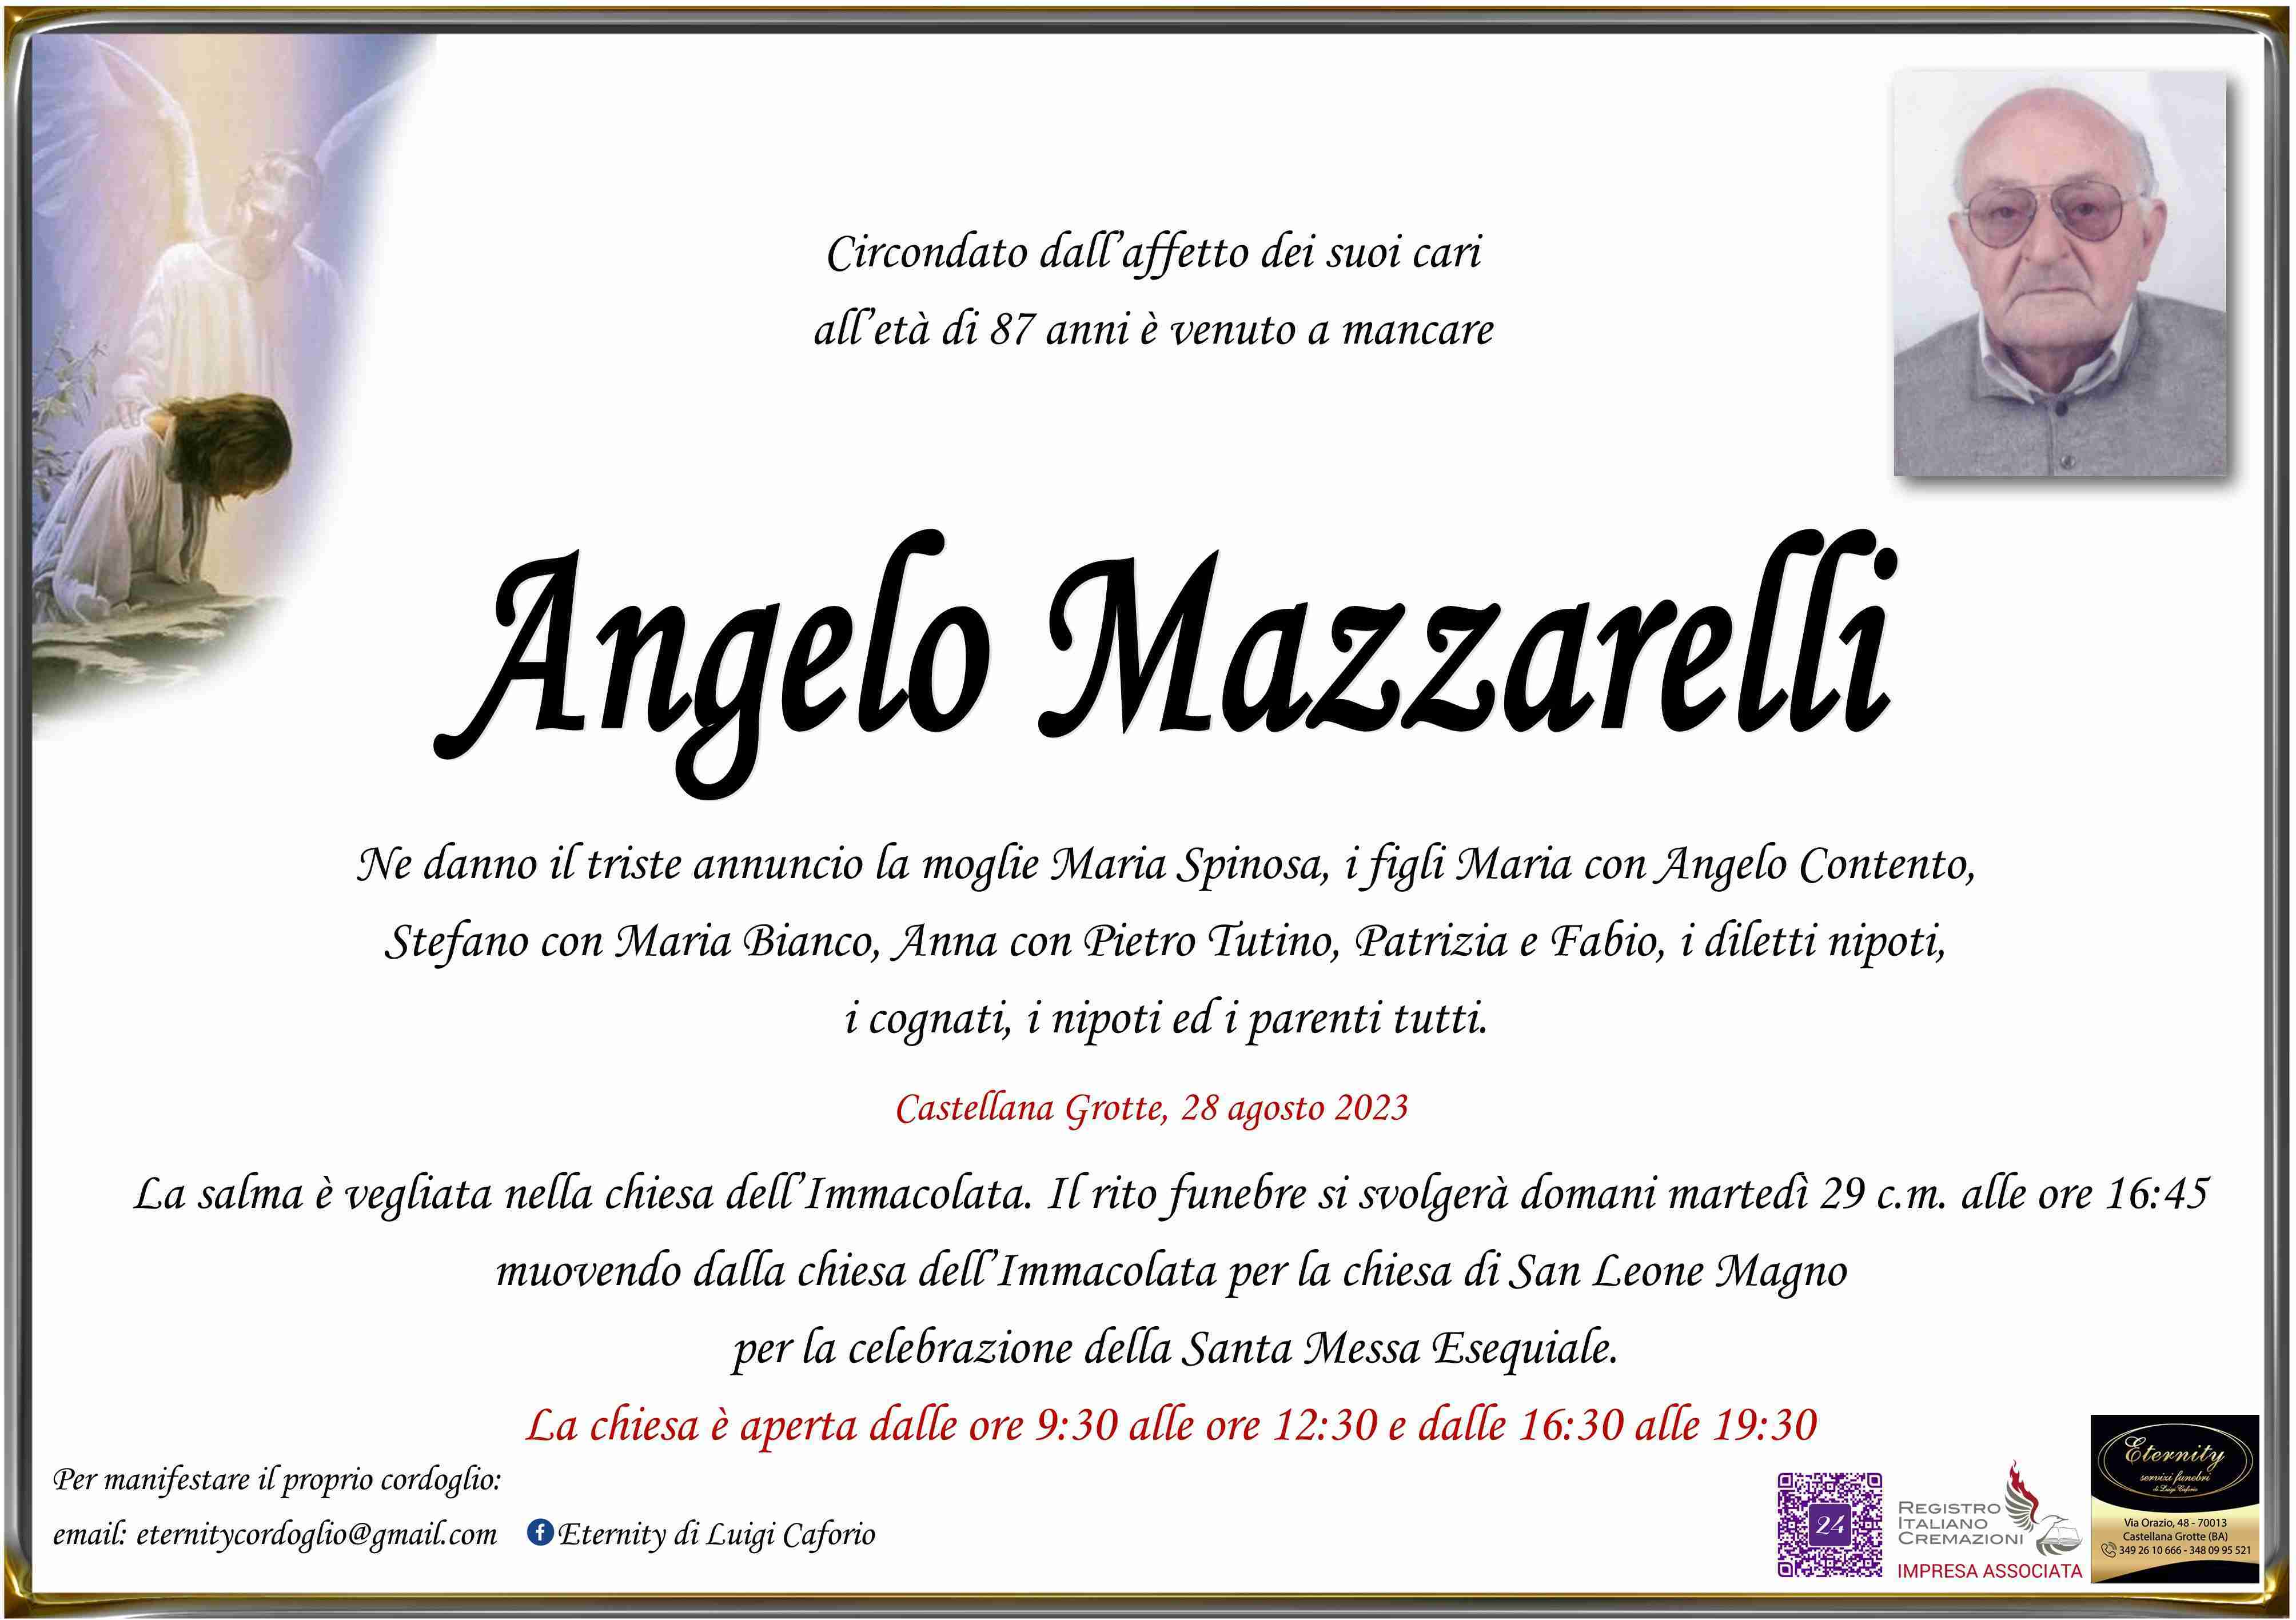 Angelo Mazzarelli